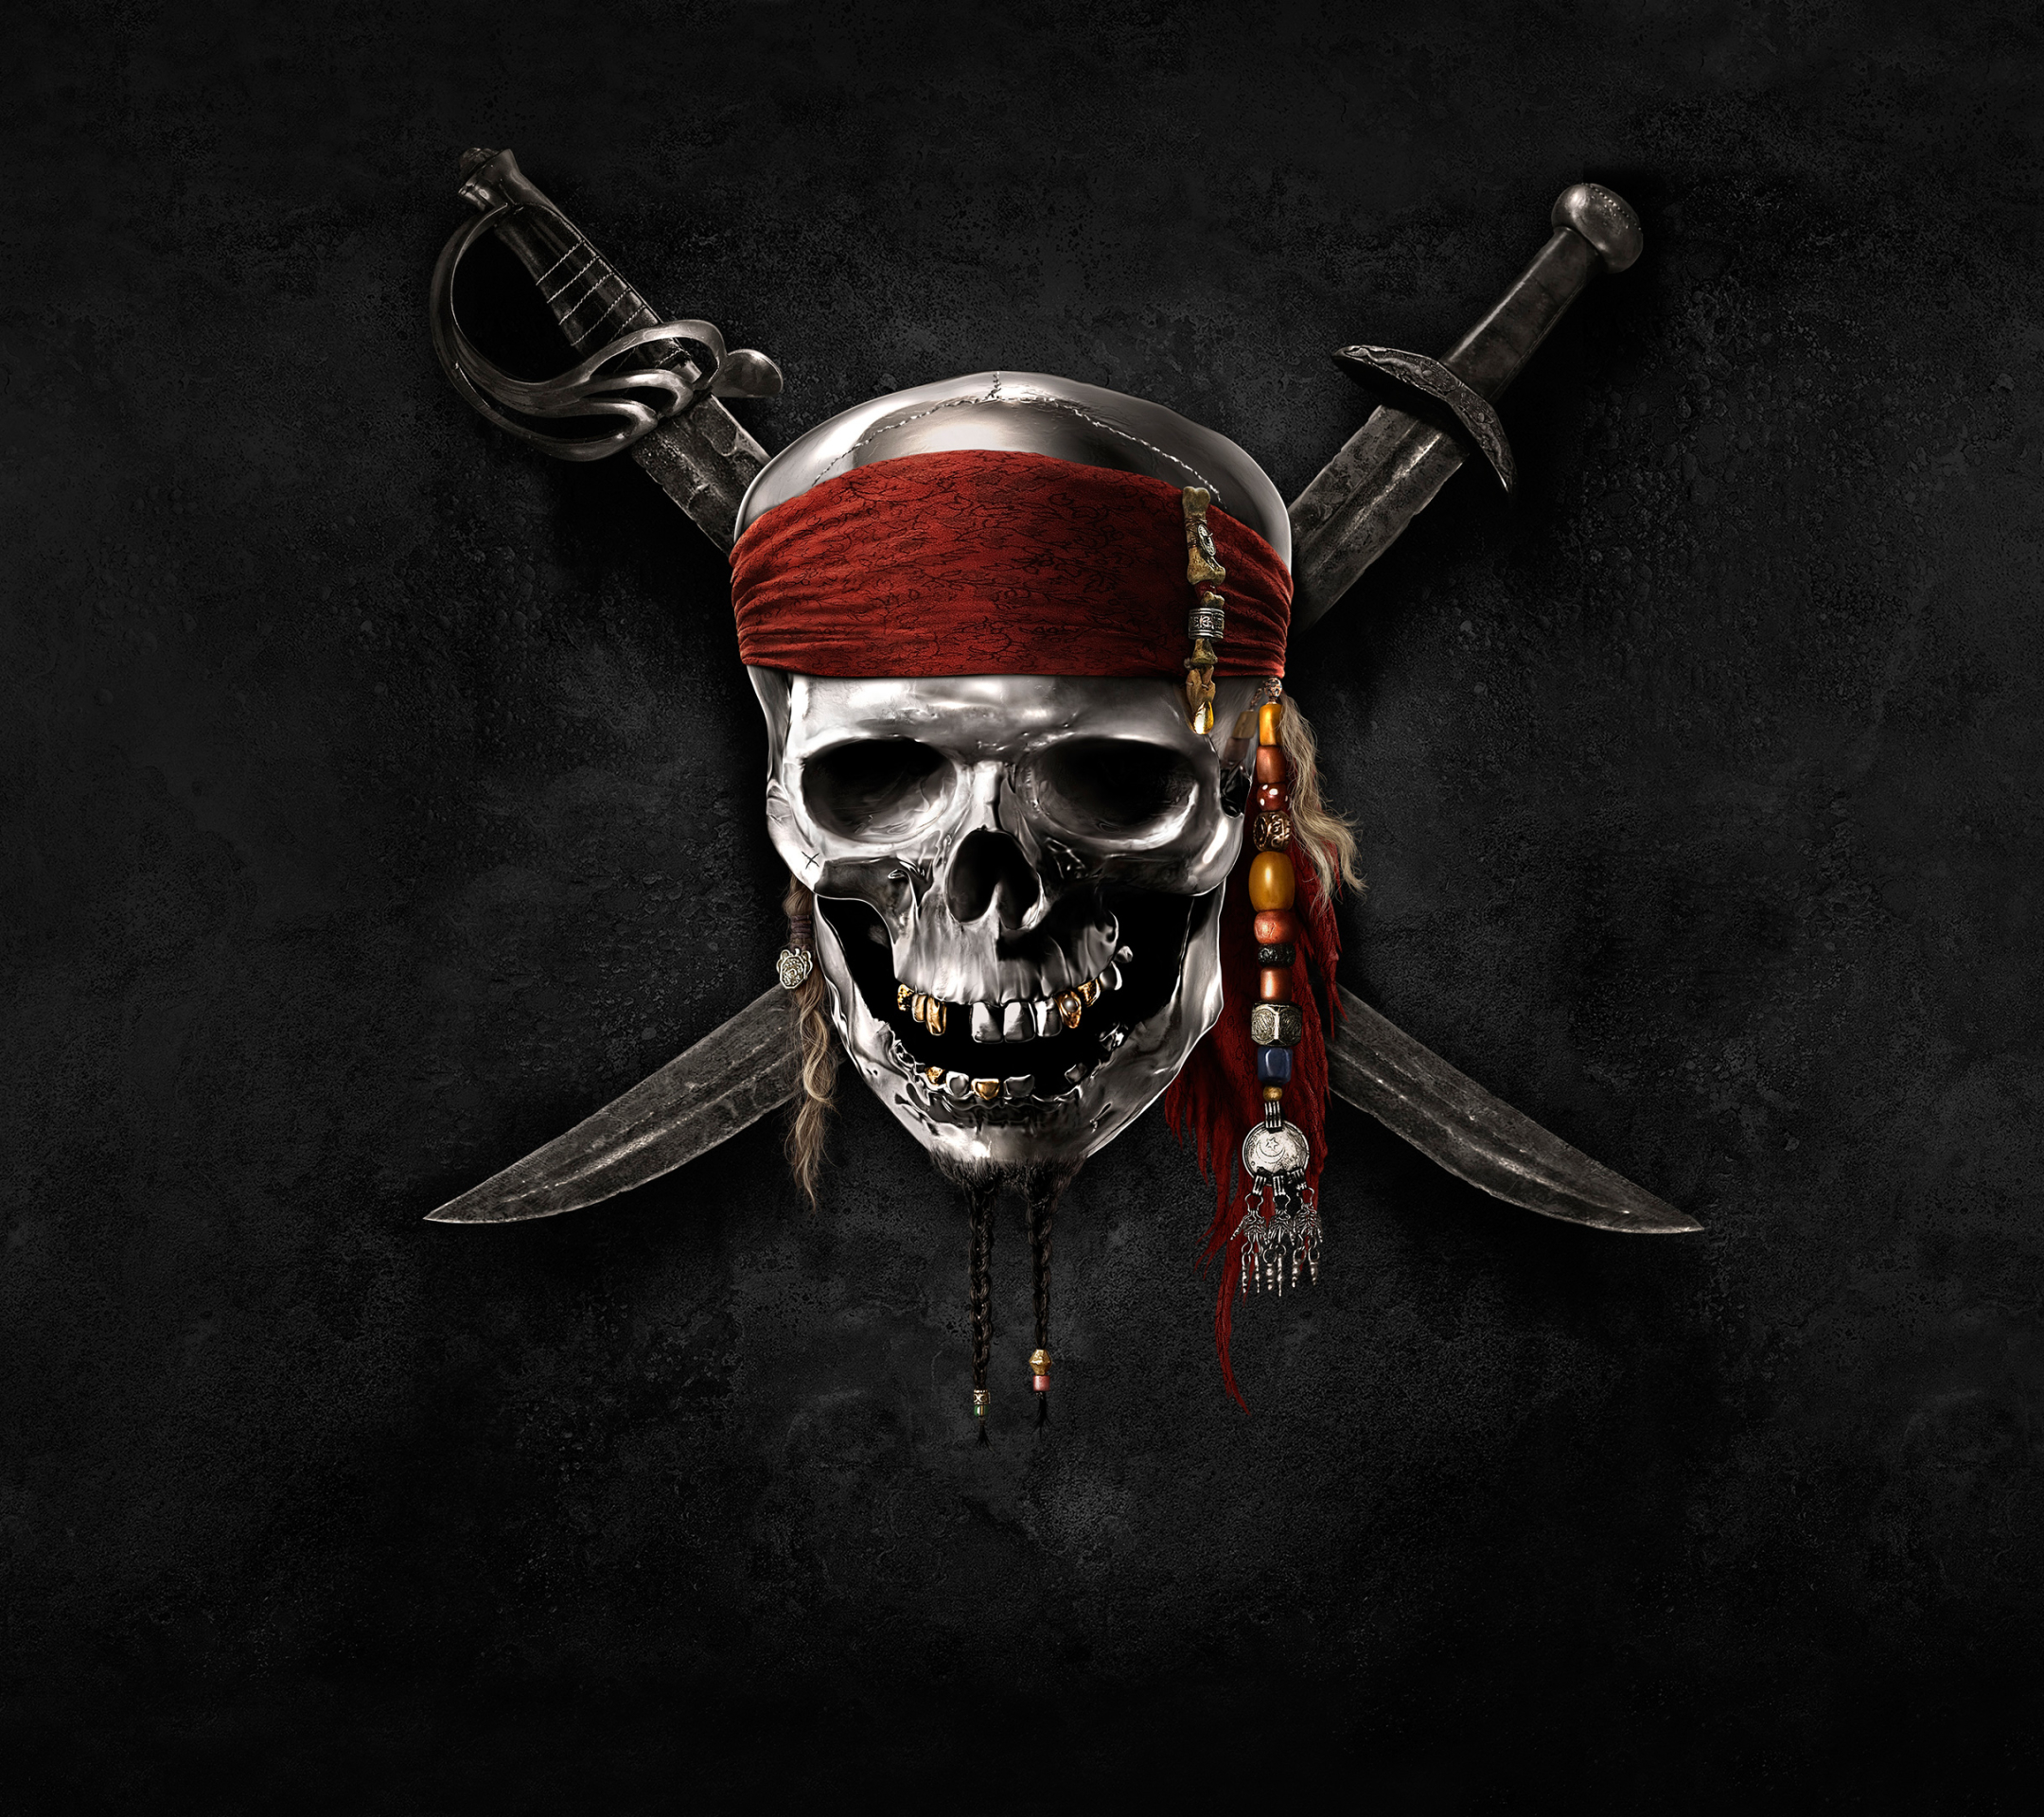 Заставки на телефон пираты